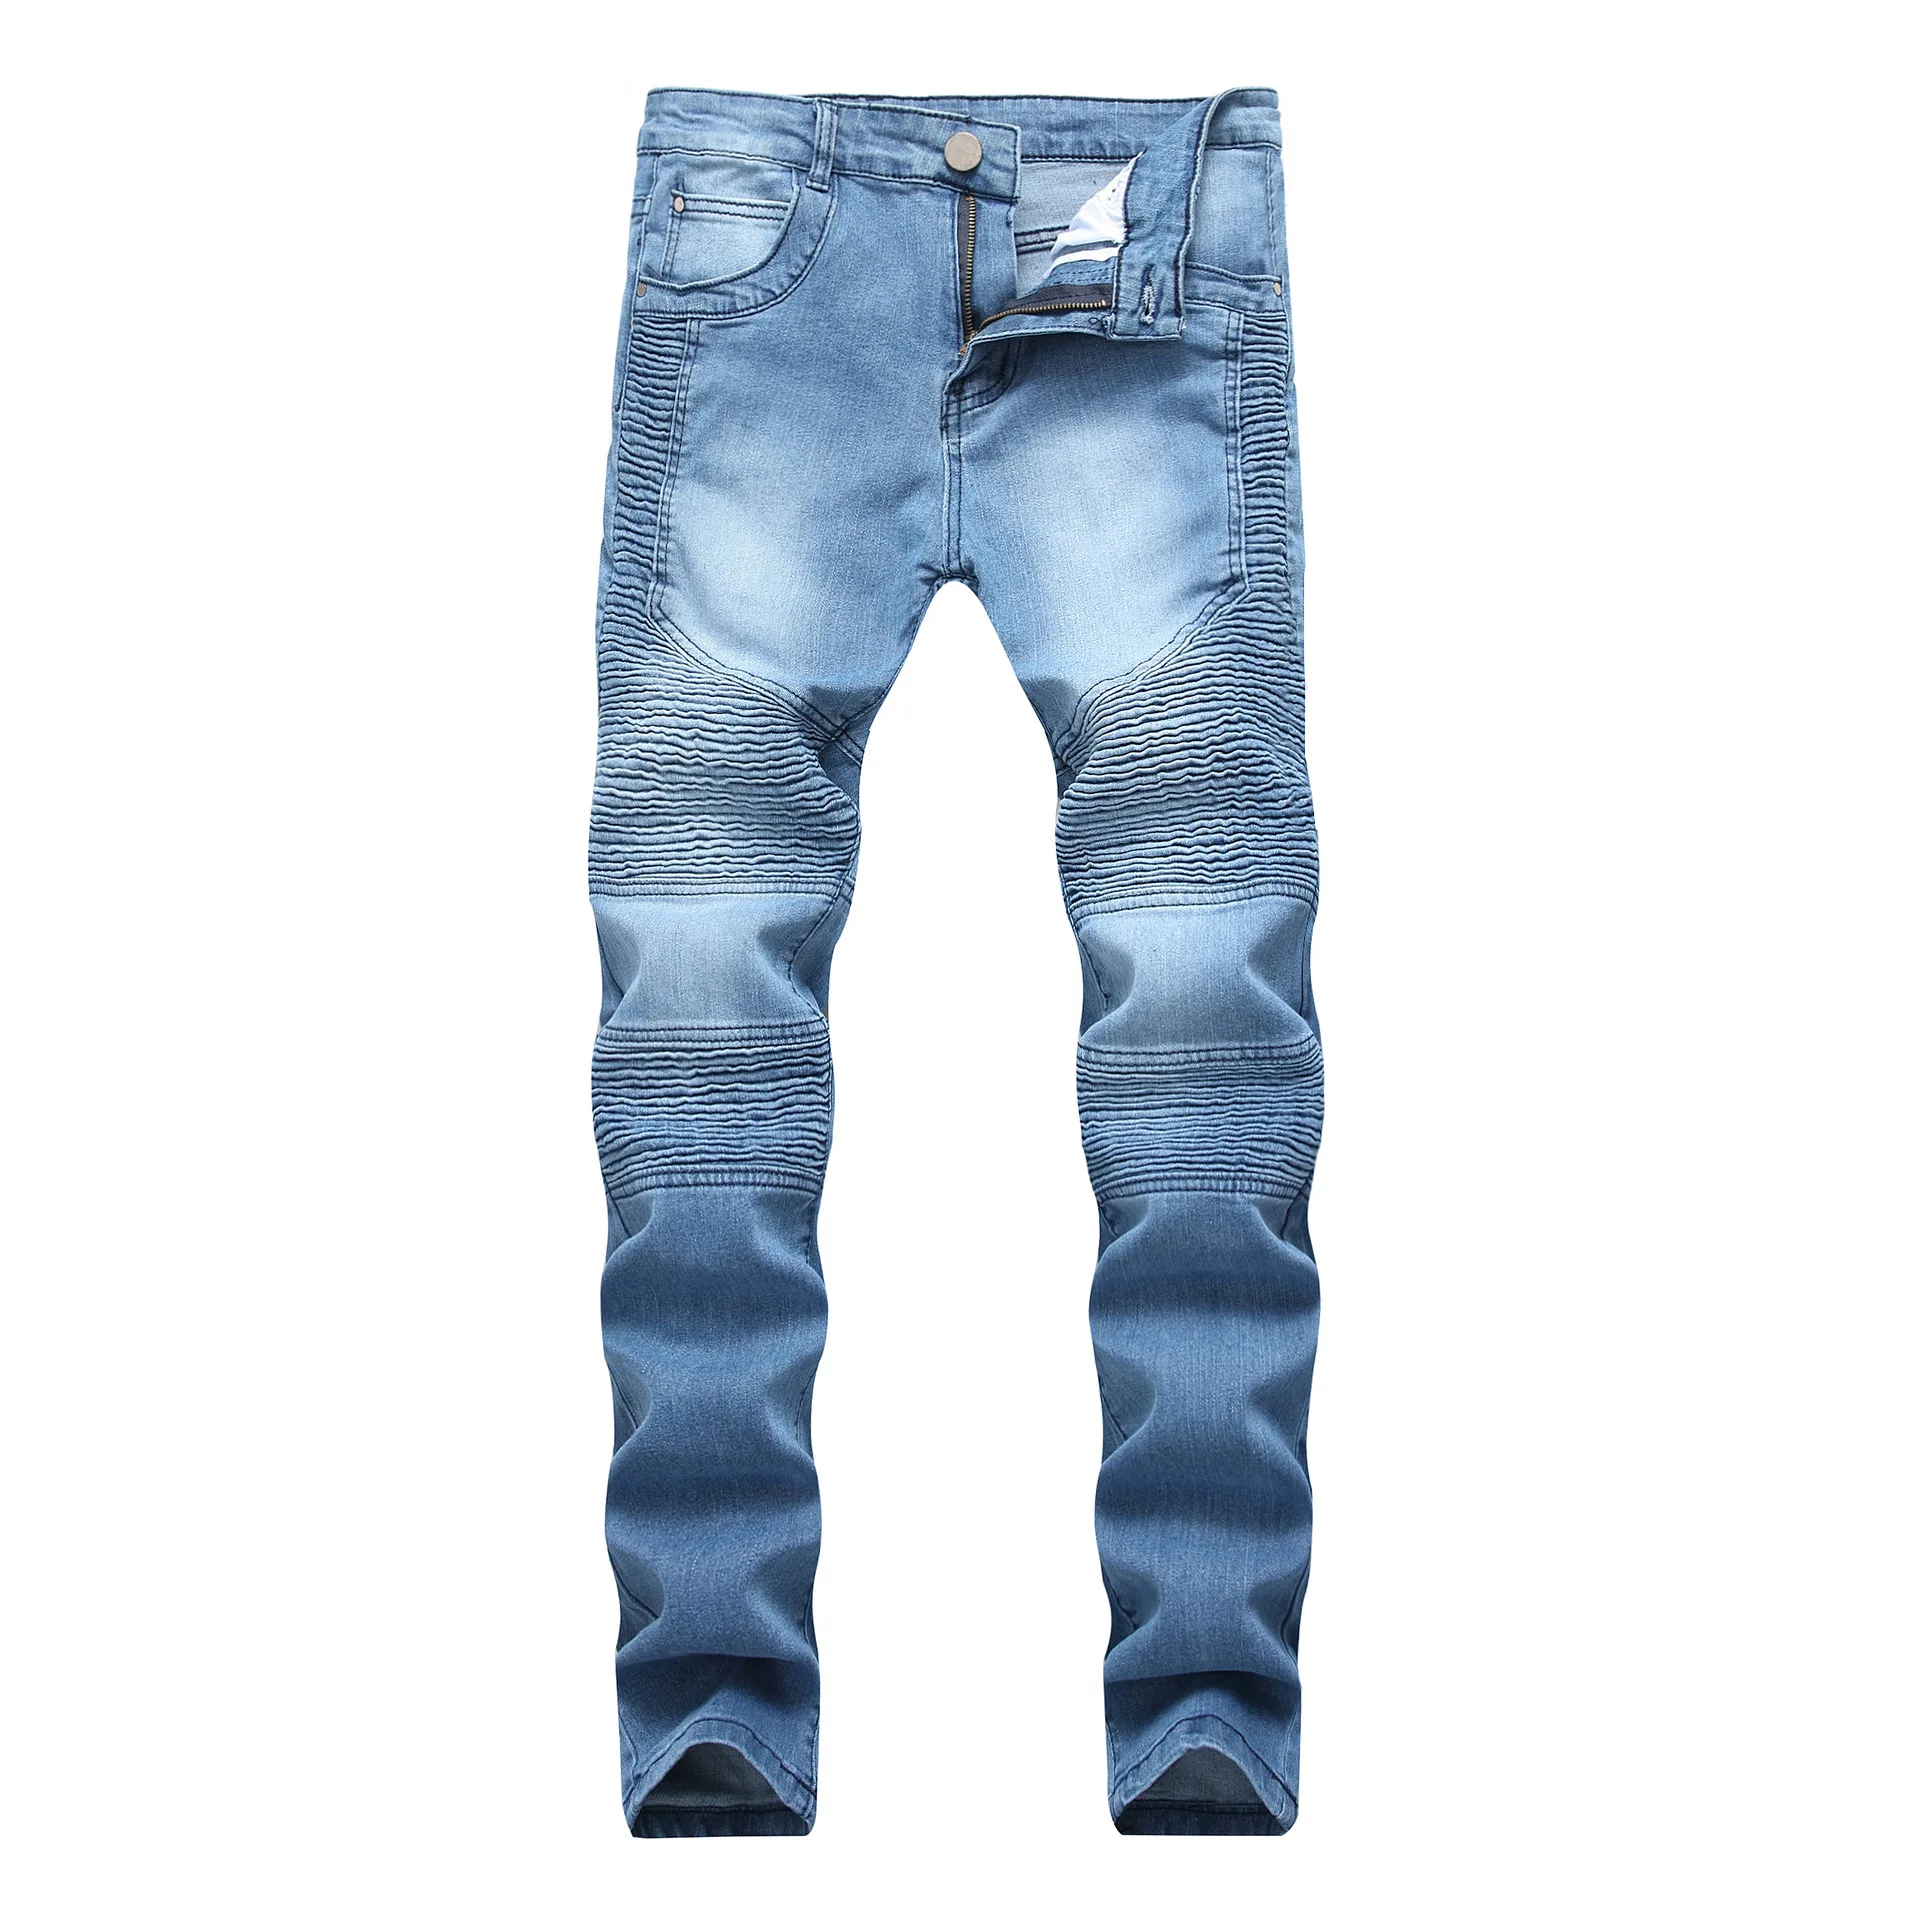 2018 Для мужчин джинсы классические прямые стрейч темно-синий Бизнес Повседневное джинсовые штаны Тонкий почесал длинные брюки джентльмен